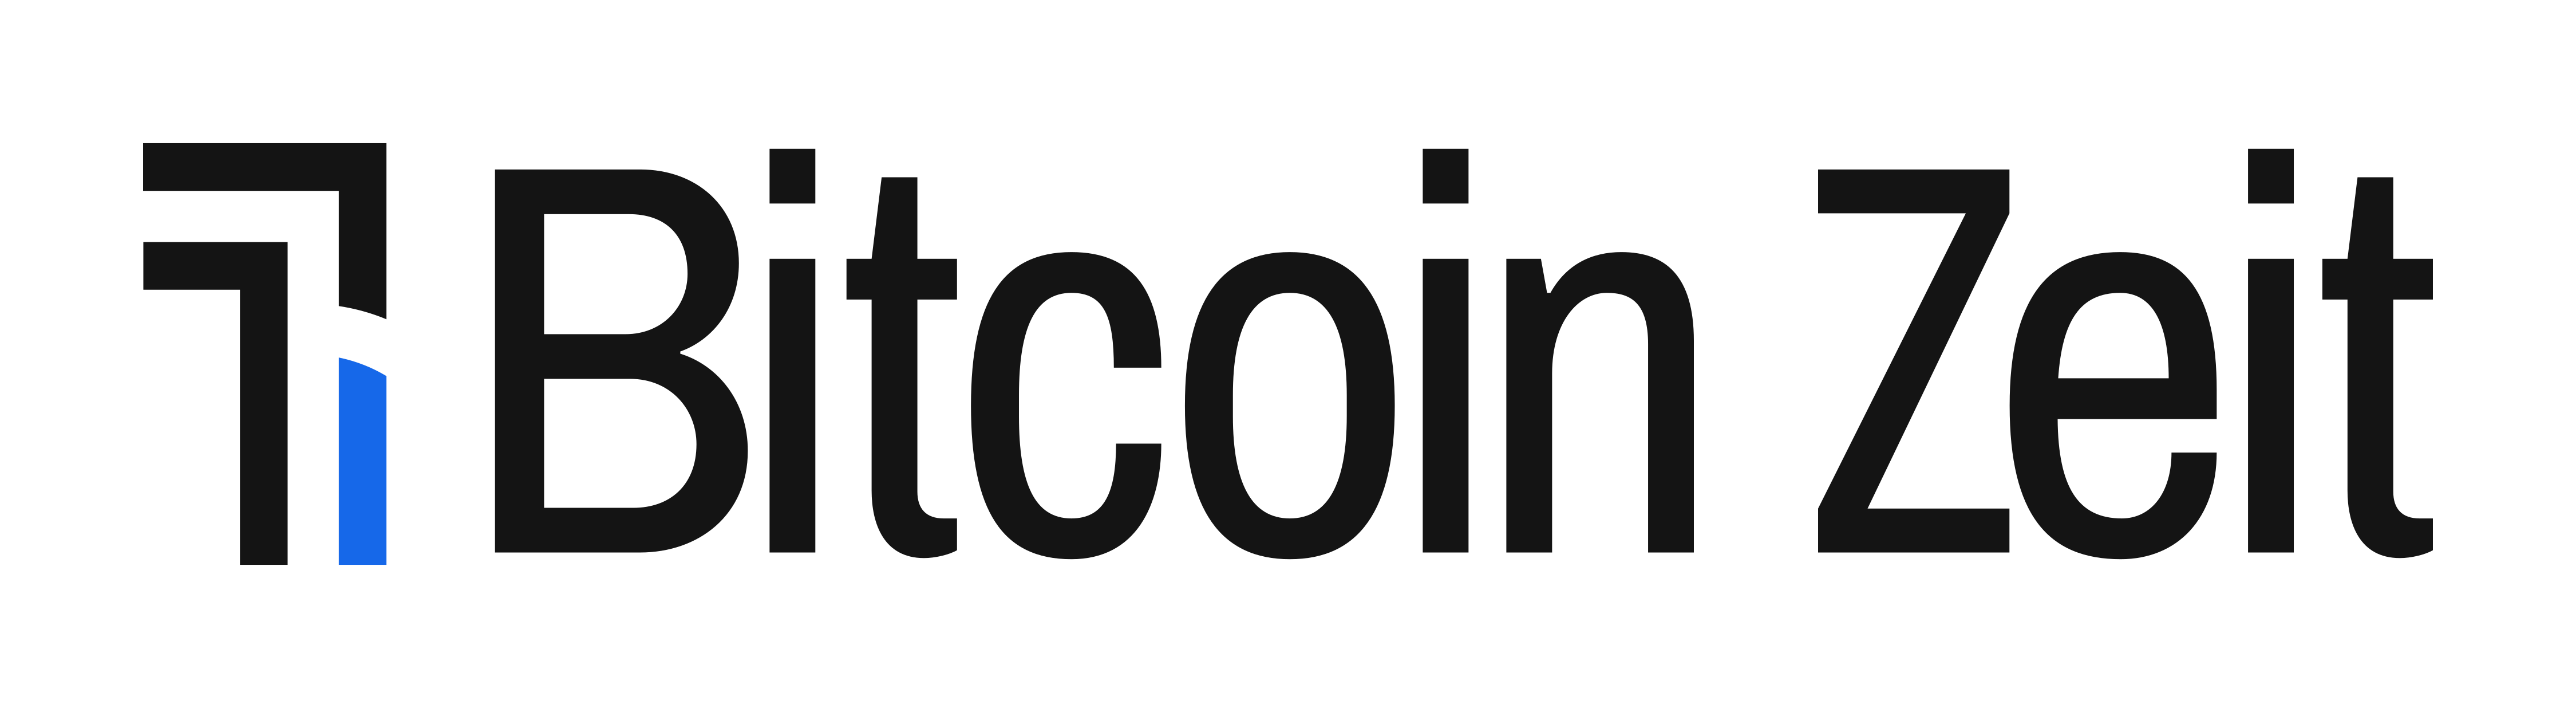 Logo Bitcoin Zeit Bitcoin Blog